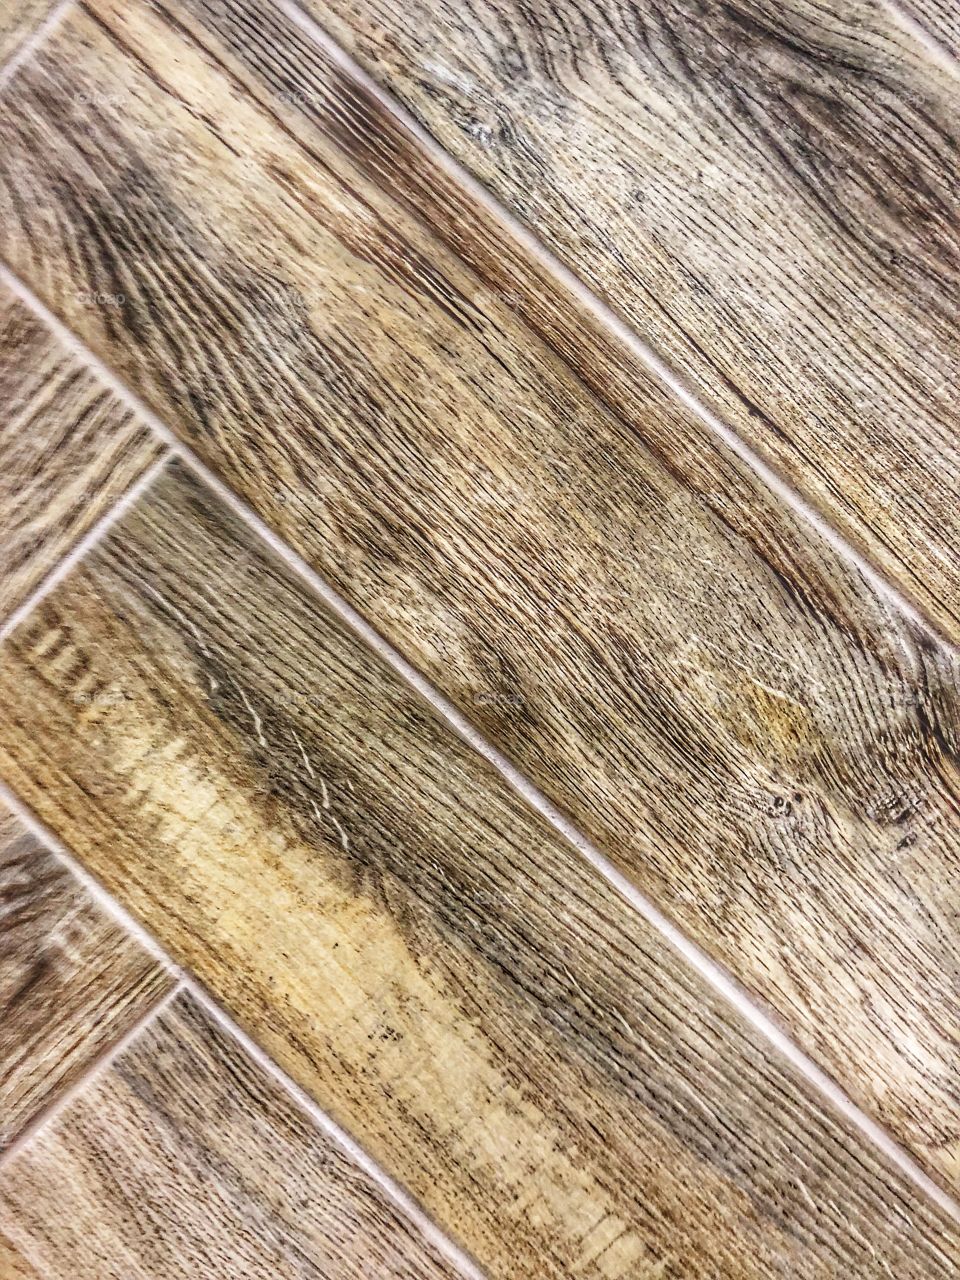 Brown Wood floor diagonal photo. 